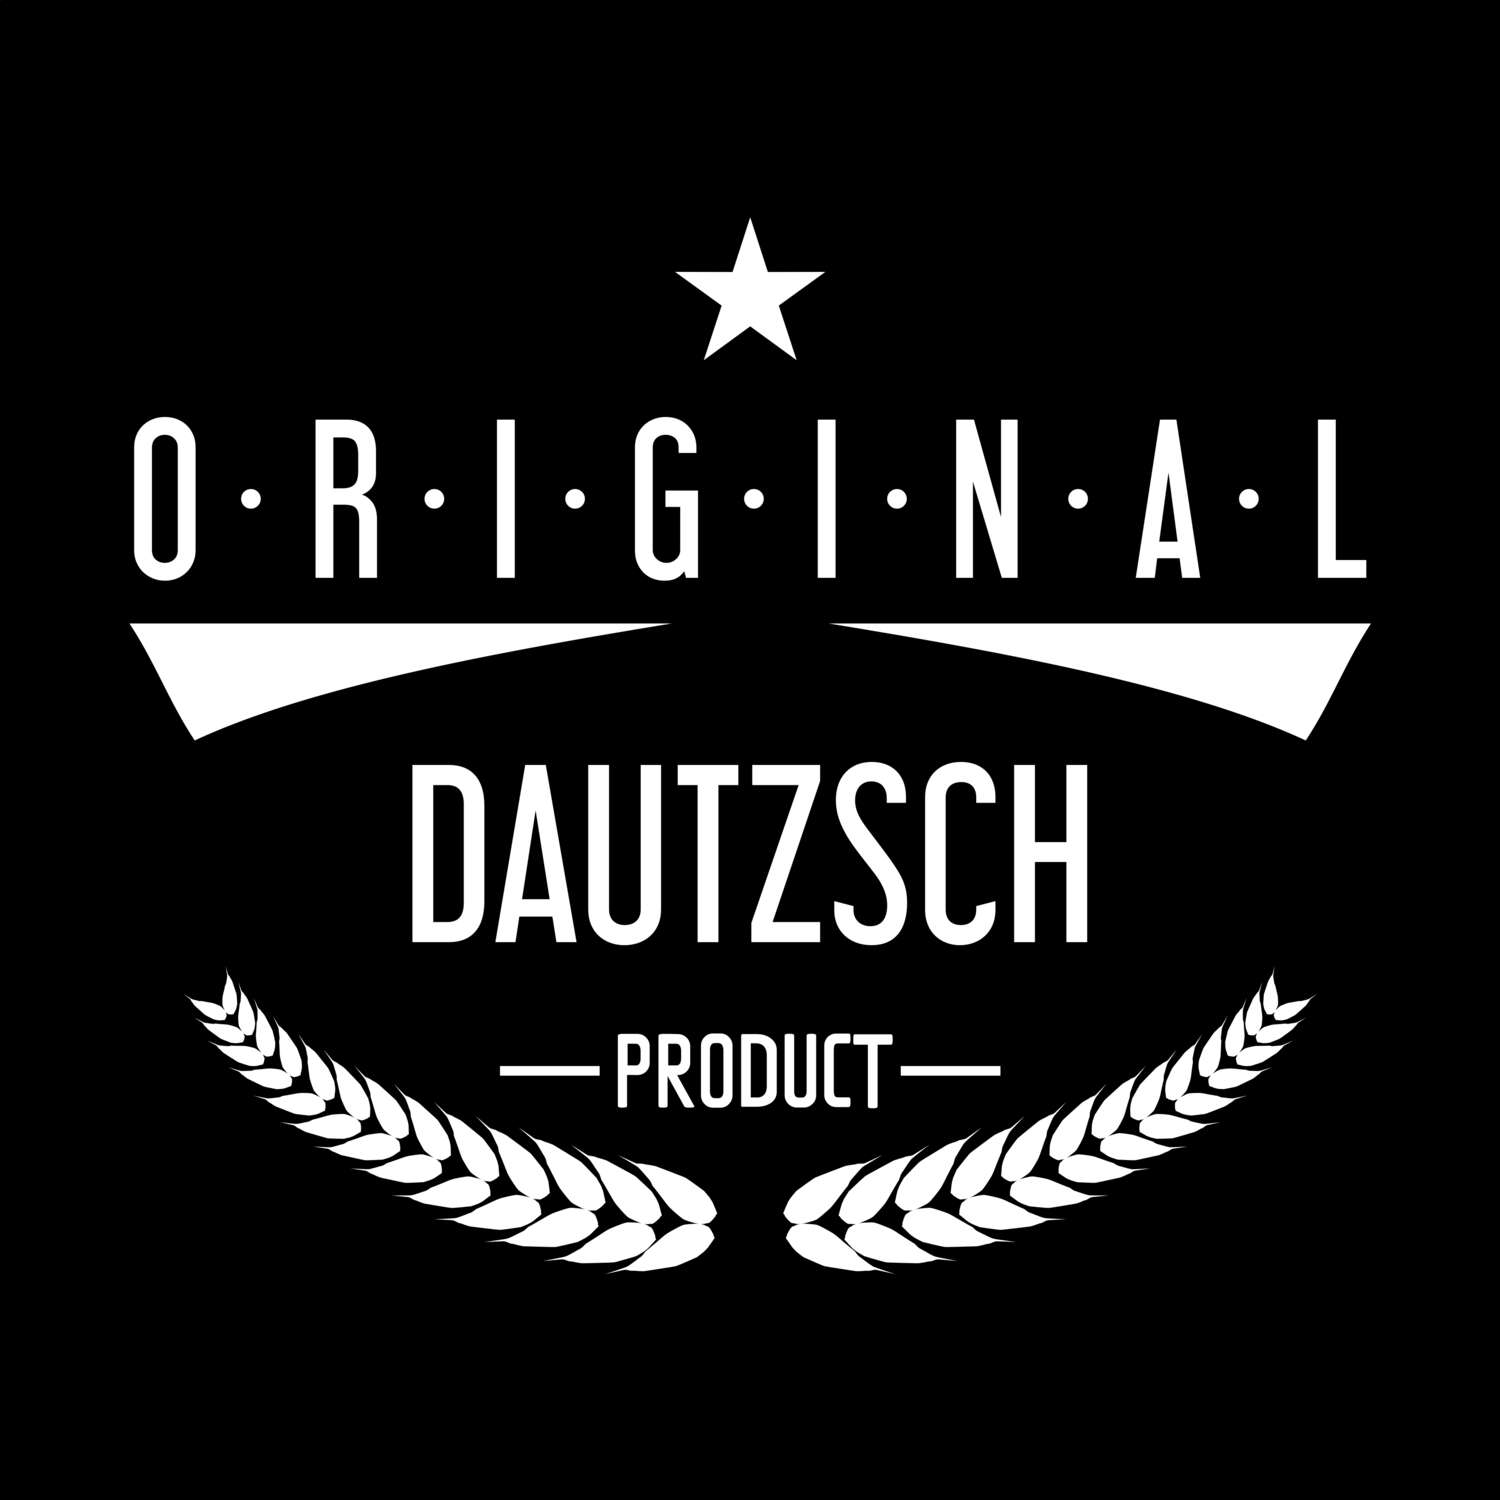 Dautzsch T-Shirt »Original Product«